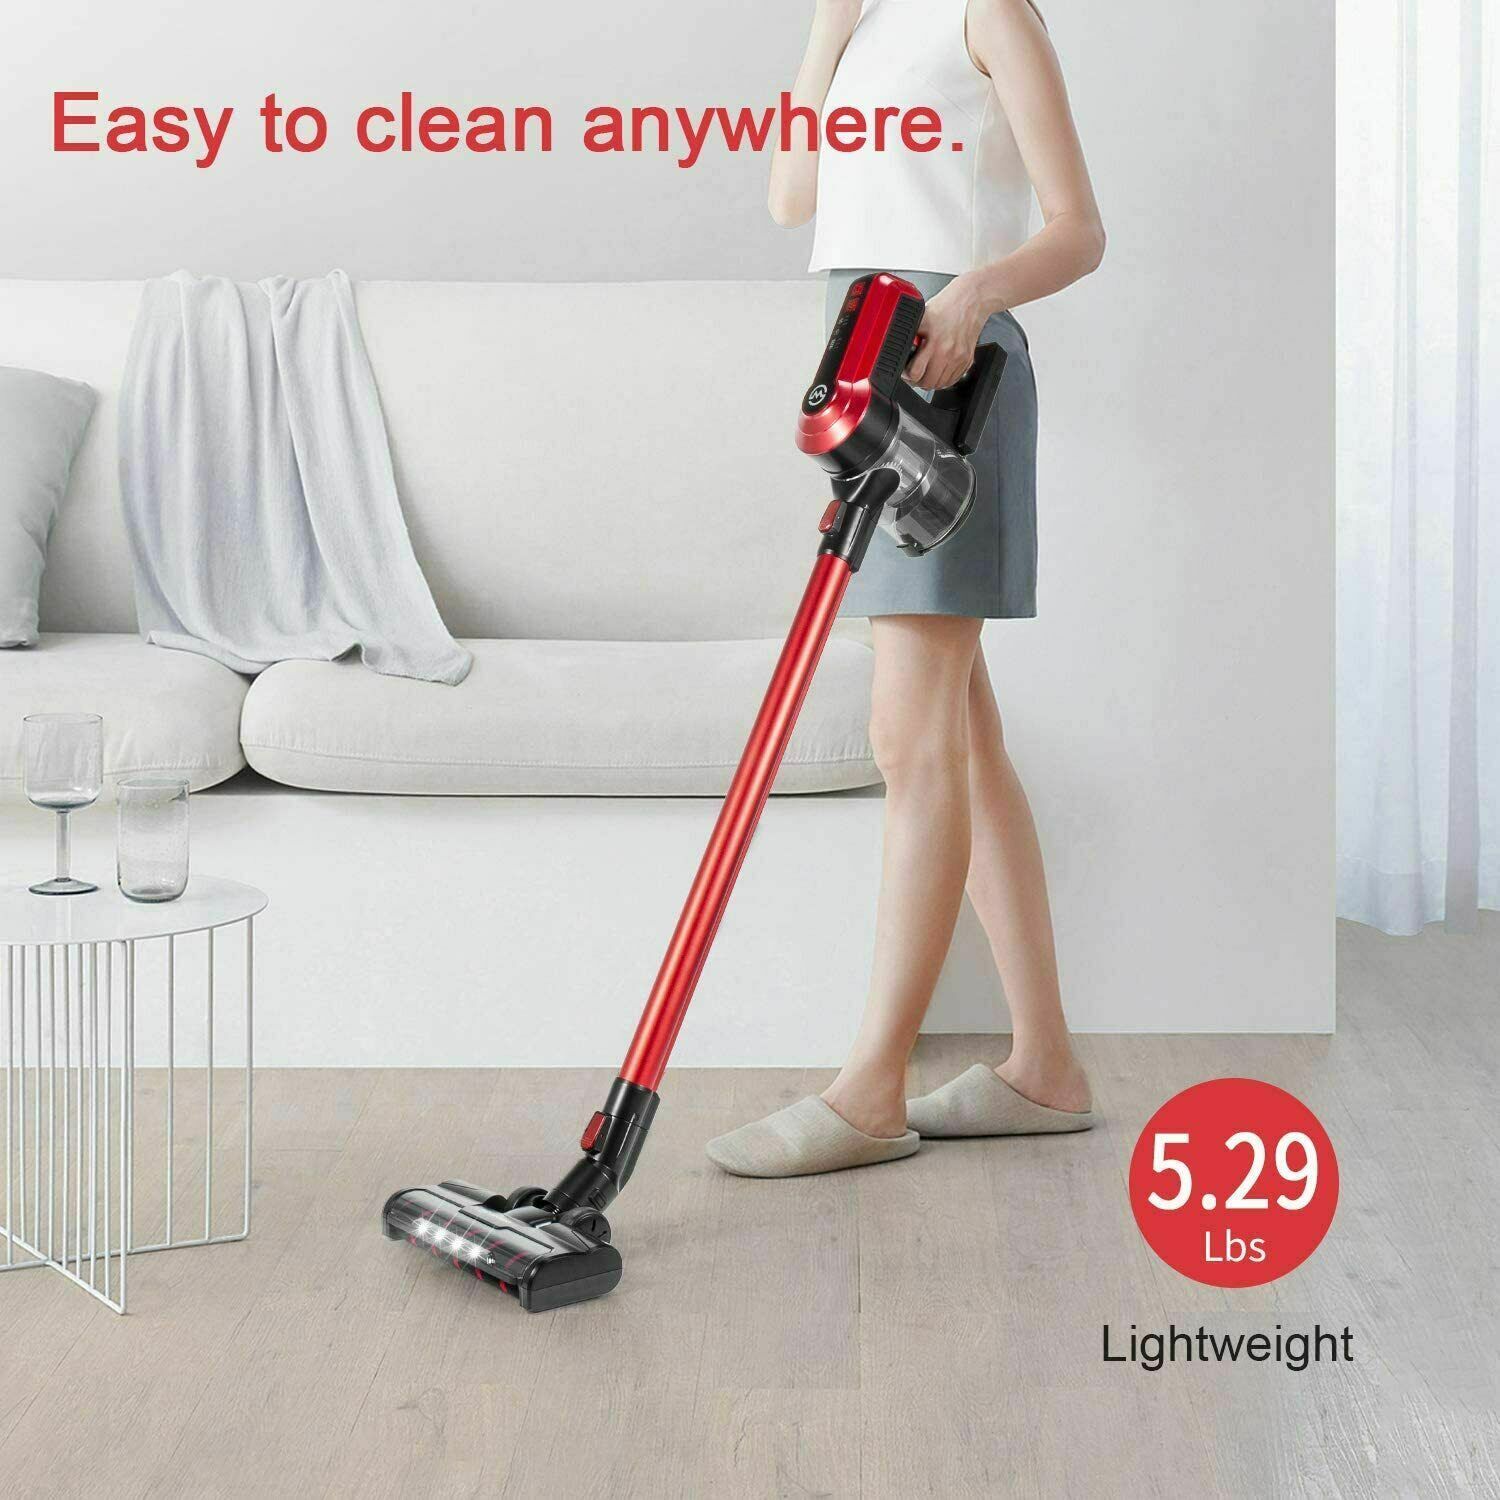 MOOSOO 5-in-1 Lightweight Cordless Stick Vacuum Cleaner 23KPA